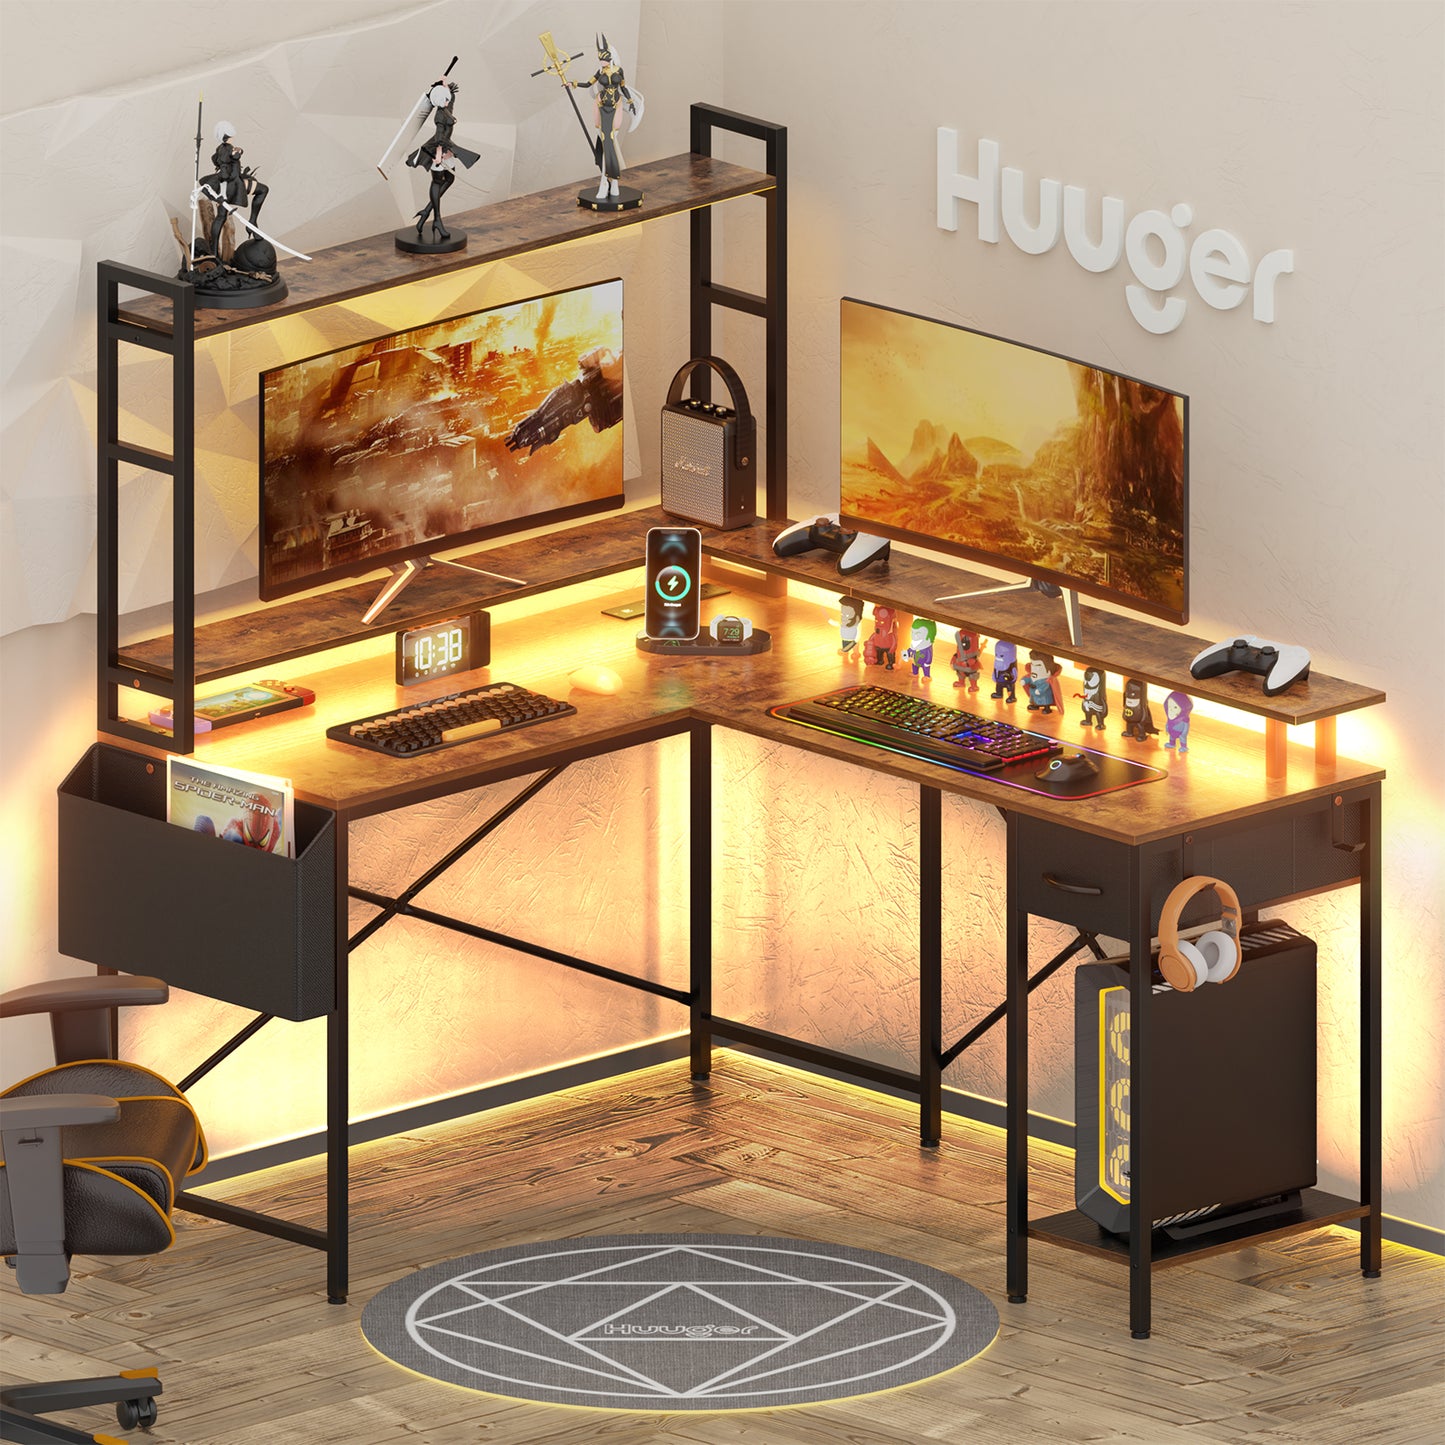 Huuger L Shaped Desk Computer Desk with LED Lights & Power Outlets, Gaming Desk with Storage Shelves, Rustic Brown